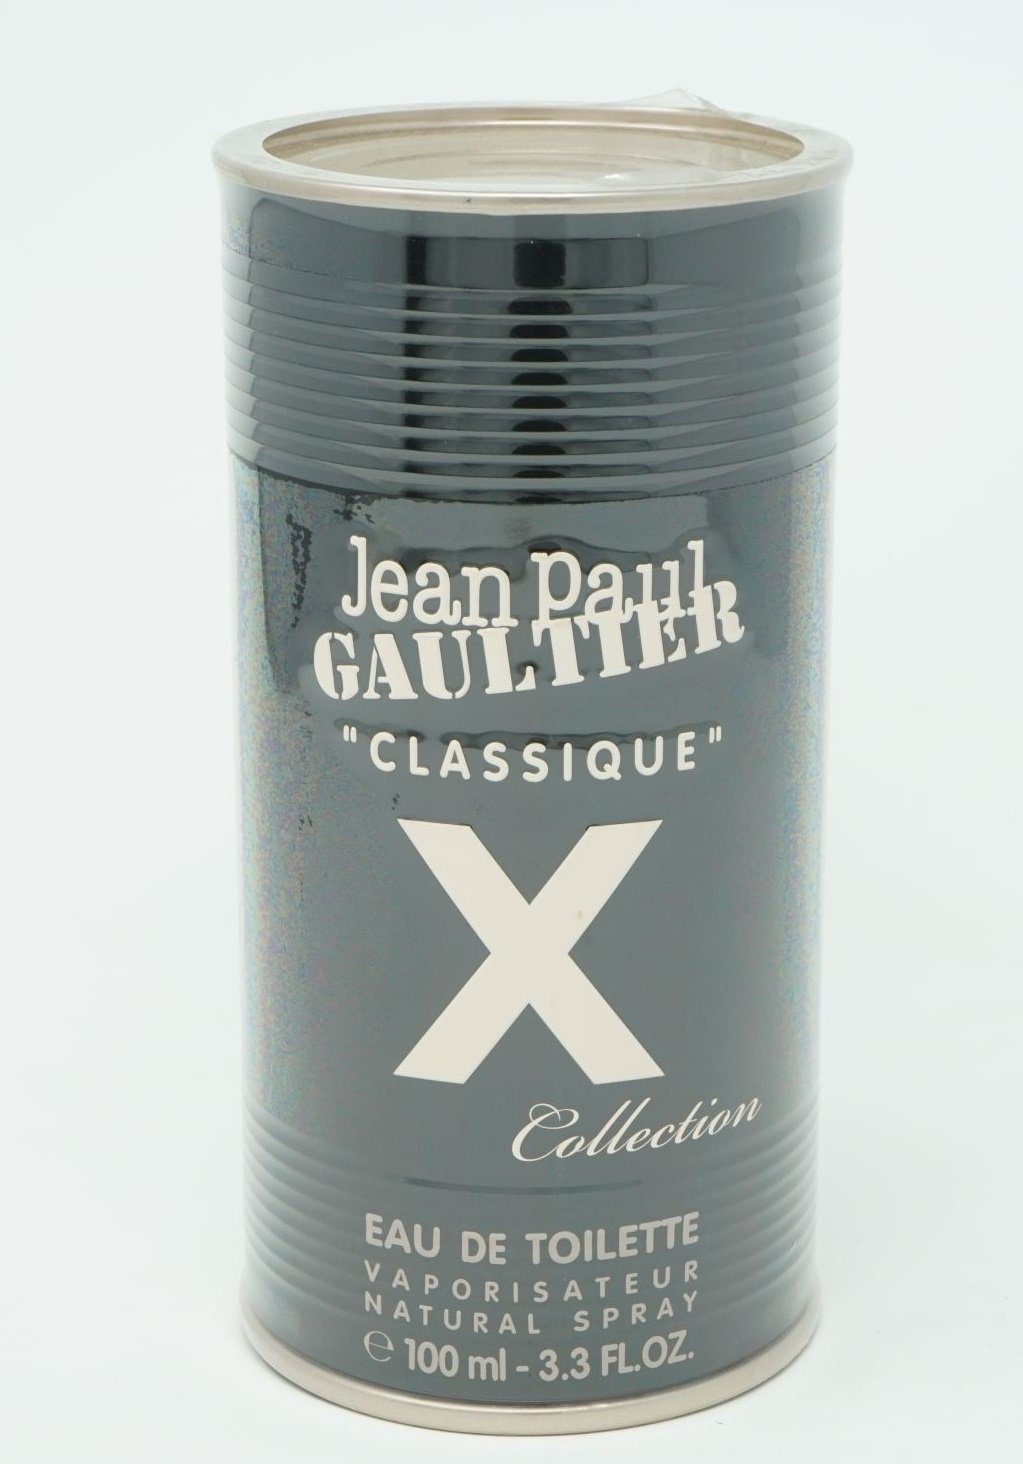 JEAN PAUL GAULTIER Eau de Toilette Jean Paul Gaultier Classique X Collection Eau de Toilette 100 ml